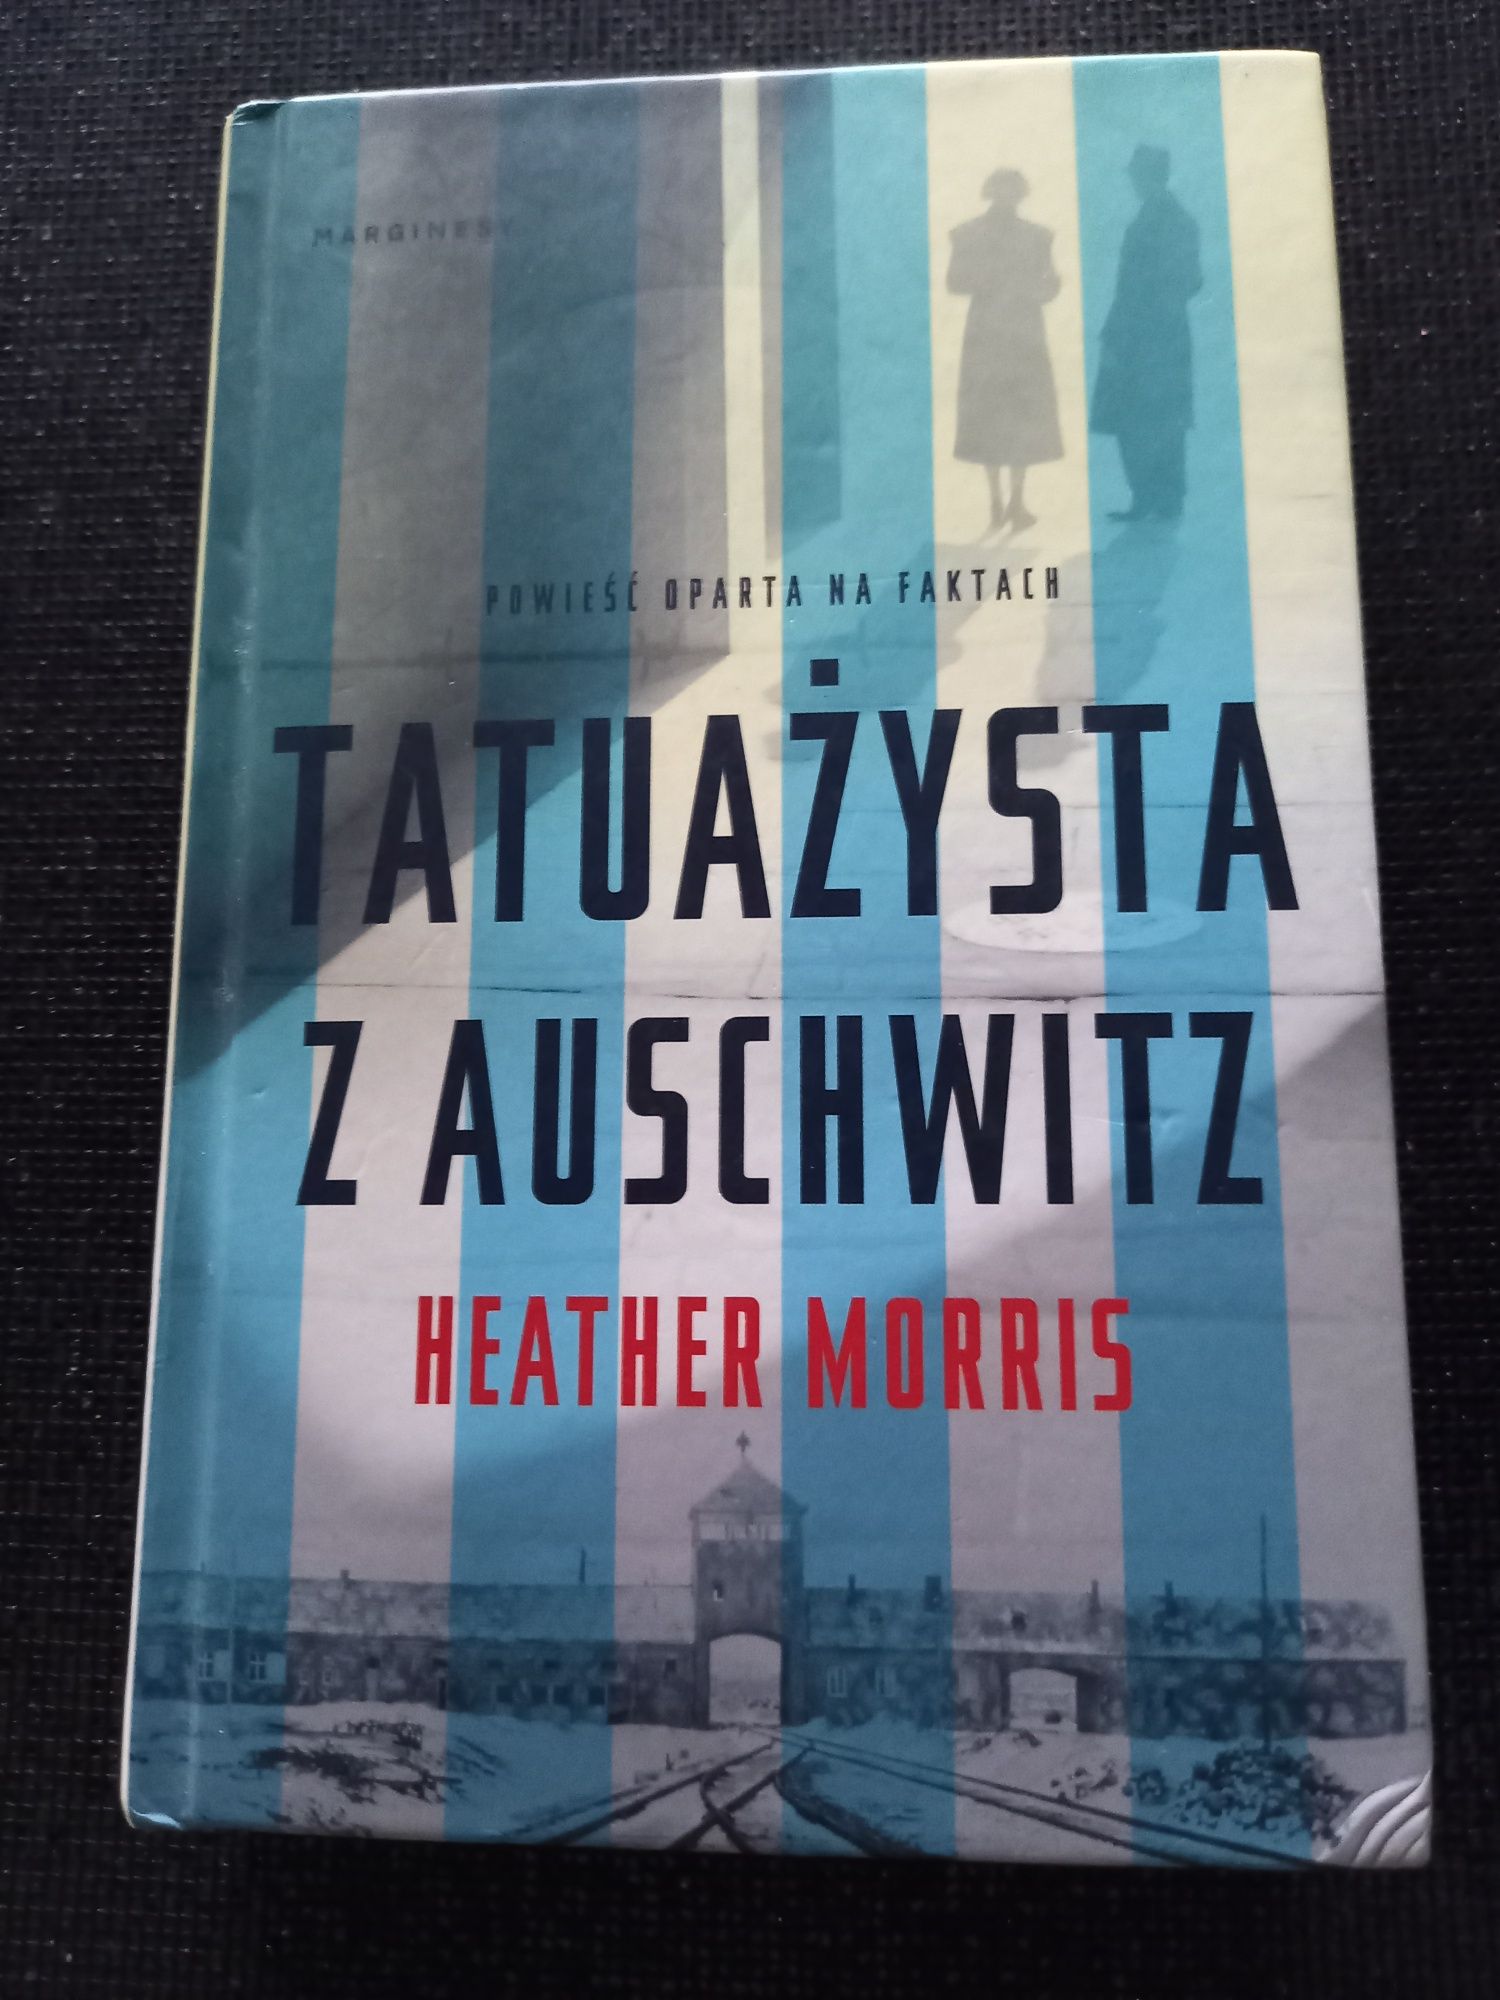 Tatuażysta z Auschwitz powieść oparta na faktach.